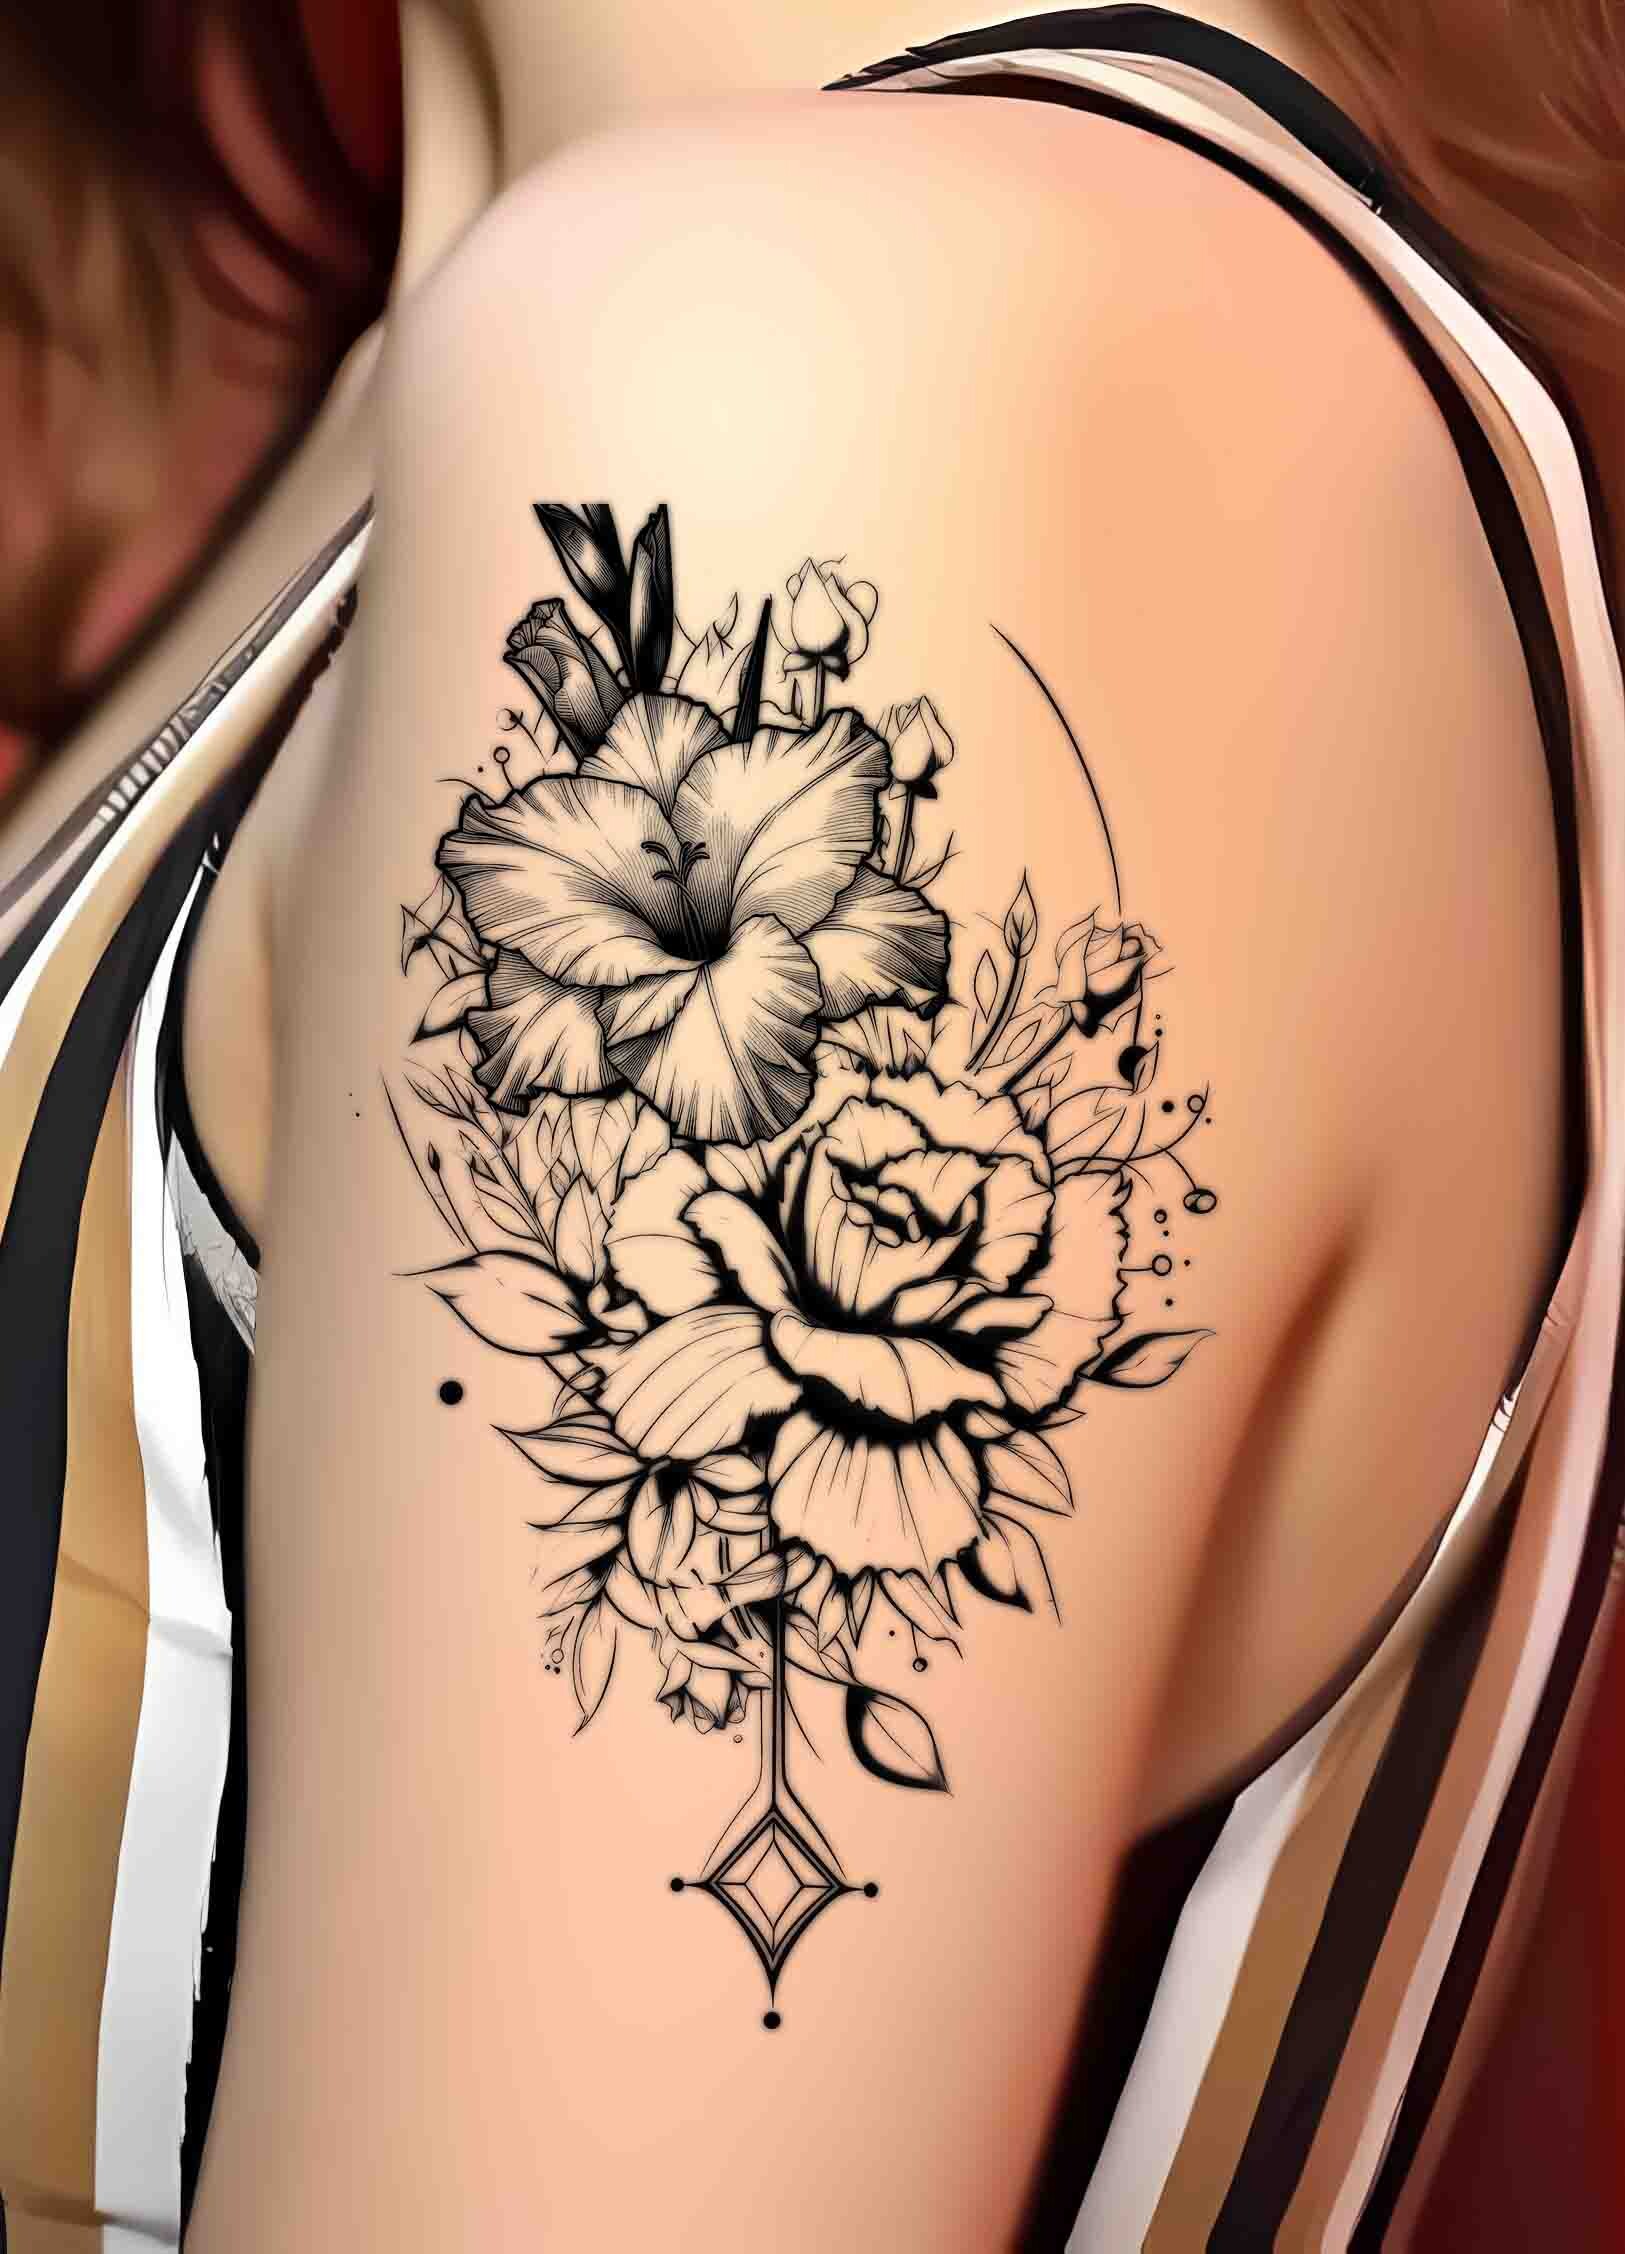 gladiolus tattoo and butterfly tattoo | premblendtats | Flickr